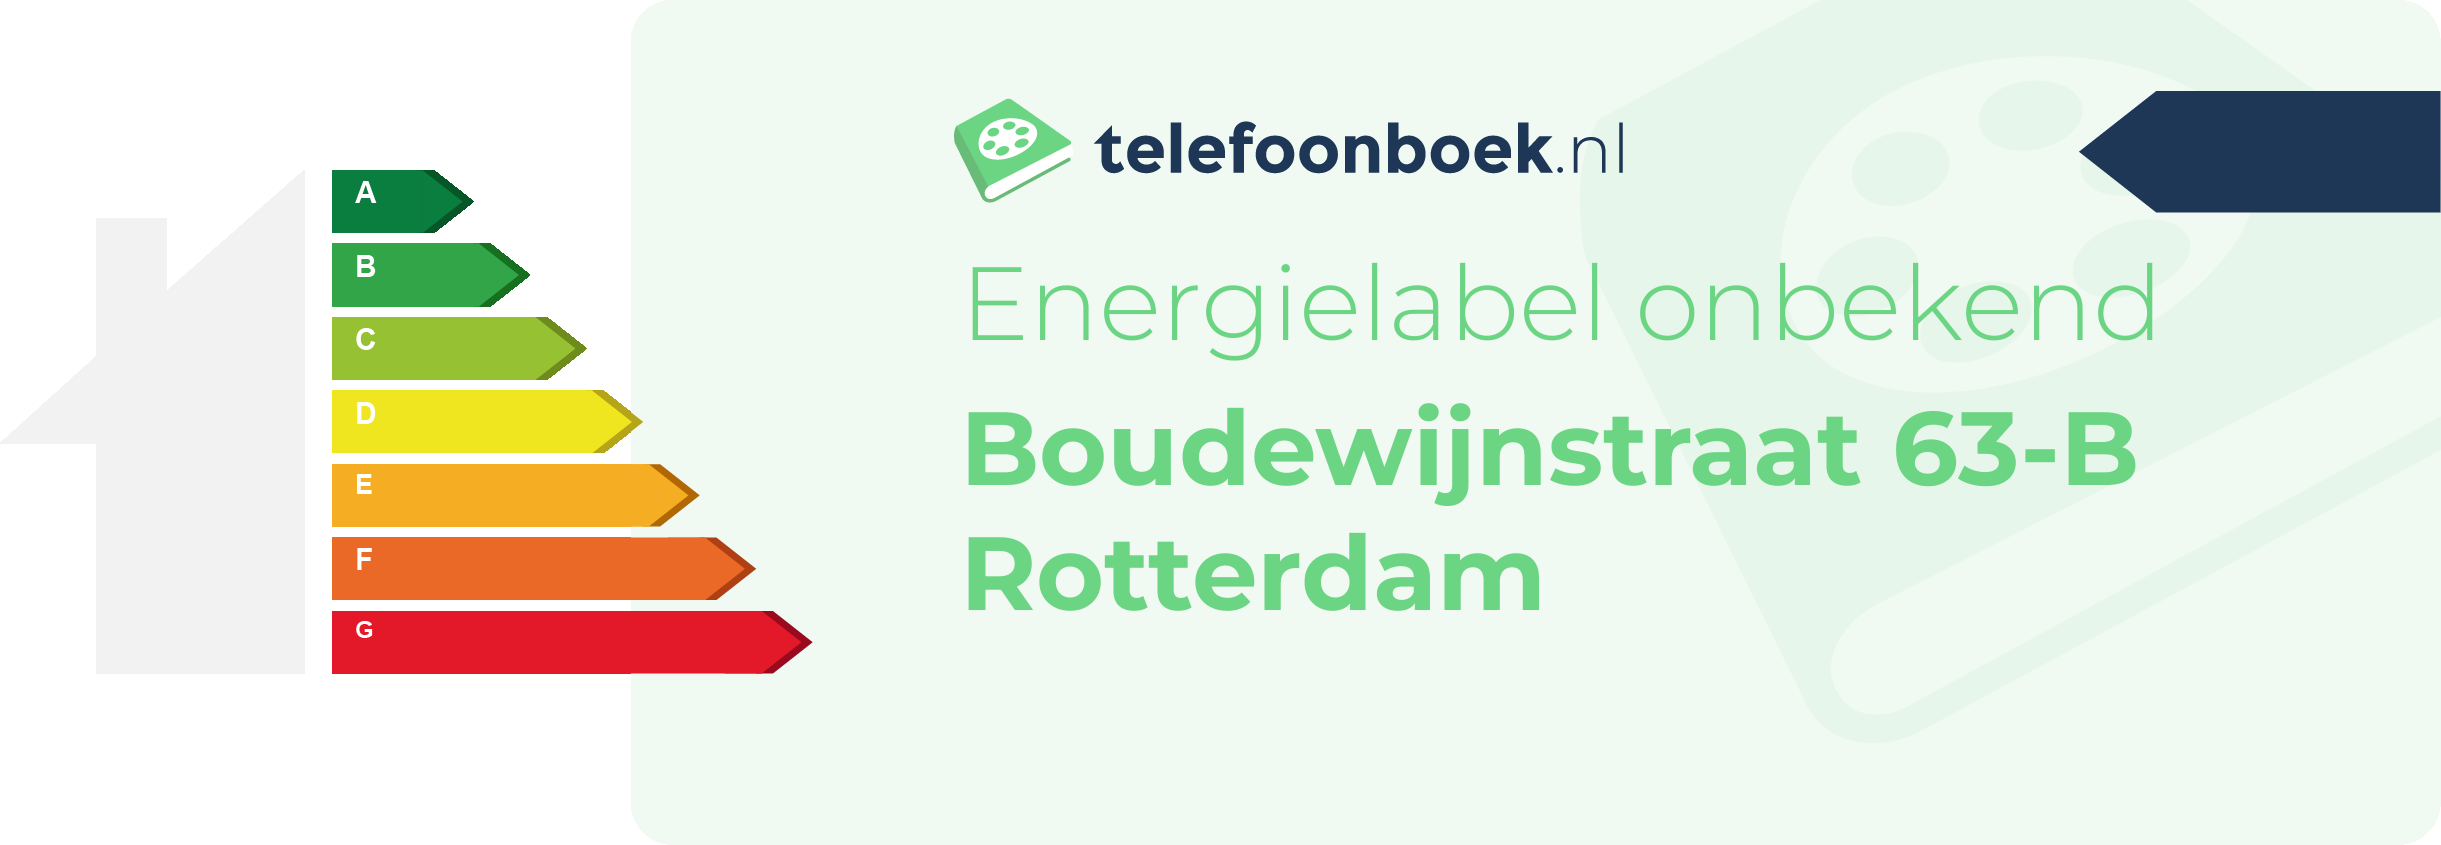 Energielabel Boudewijnstraat 63-B Rotterdam